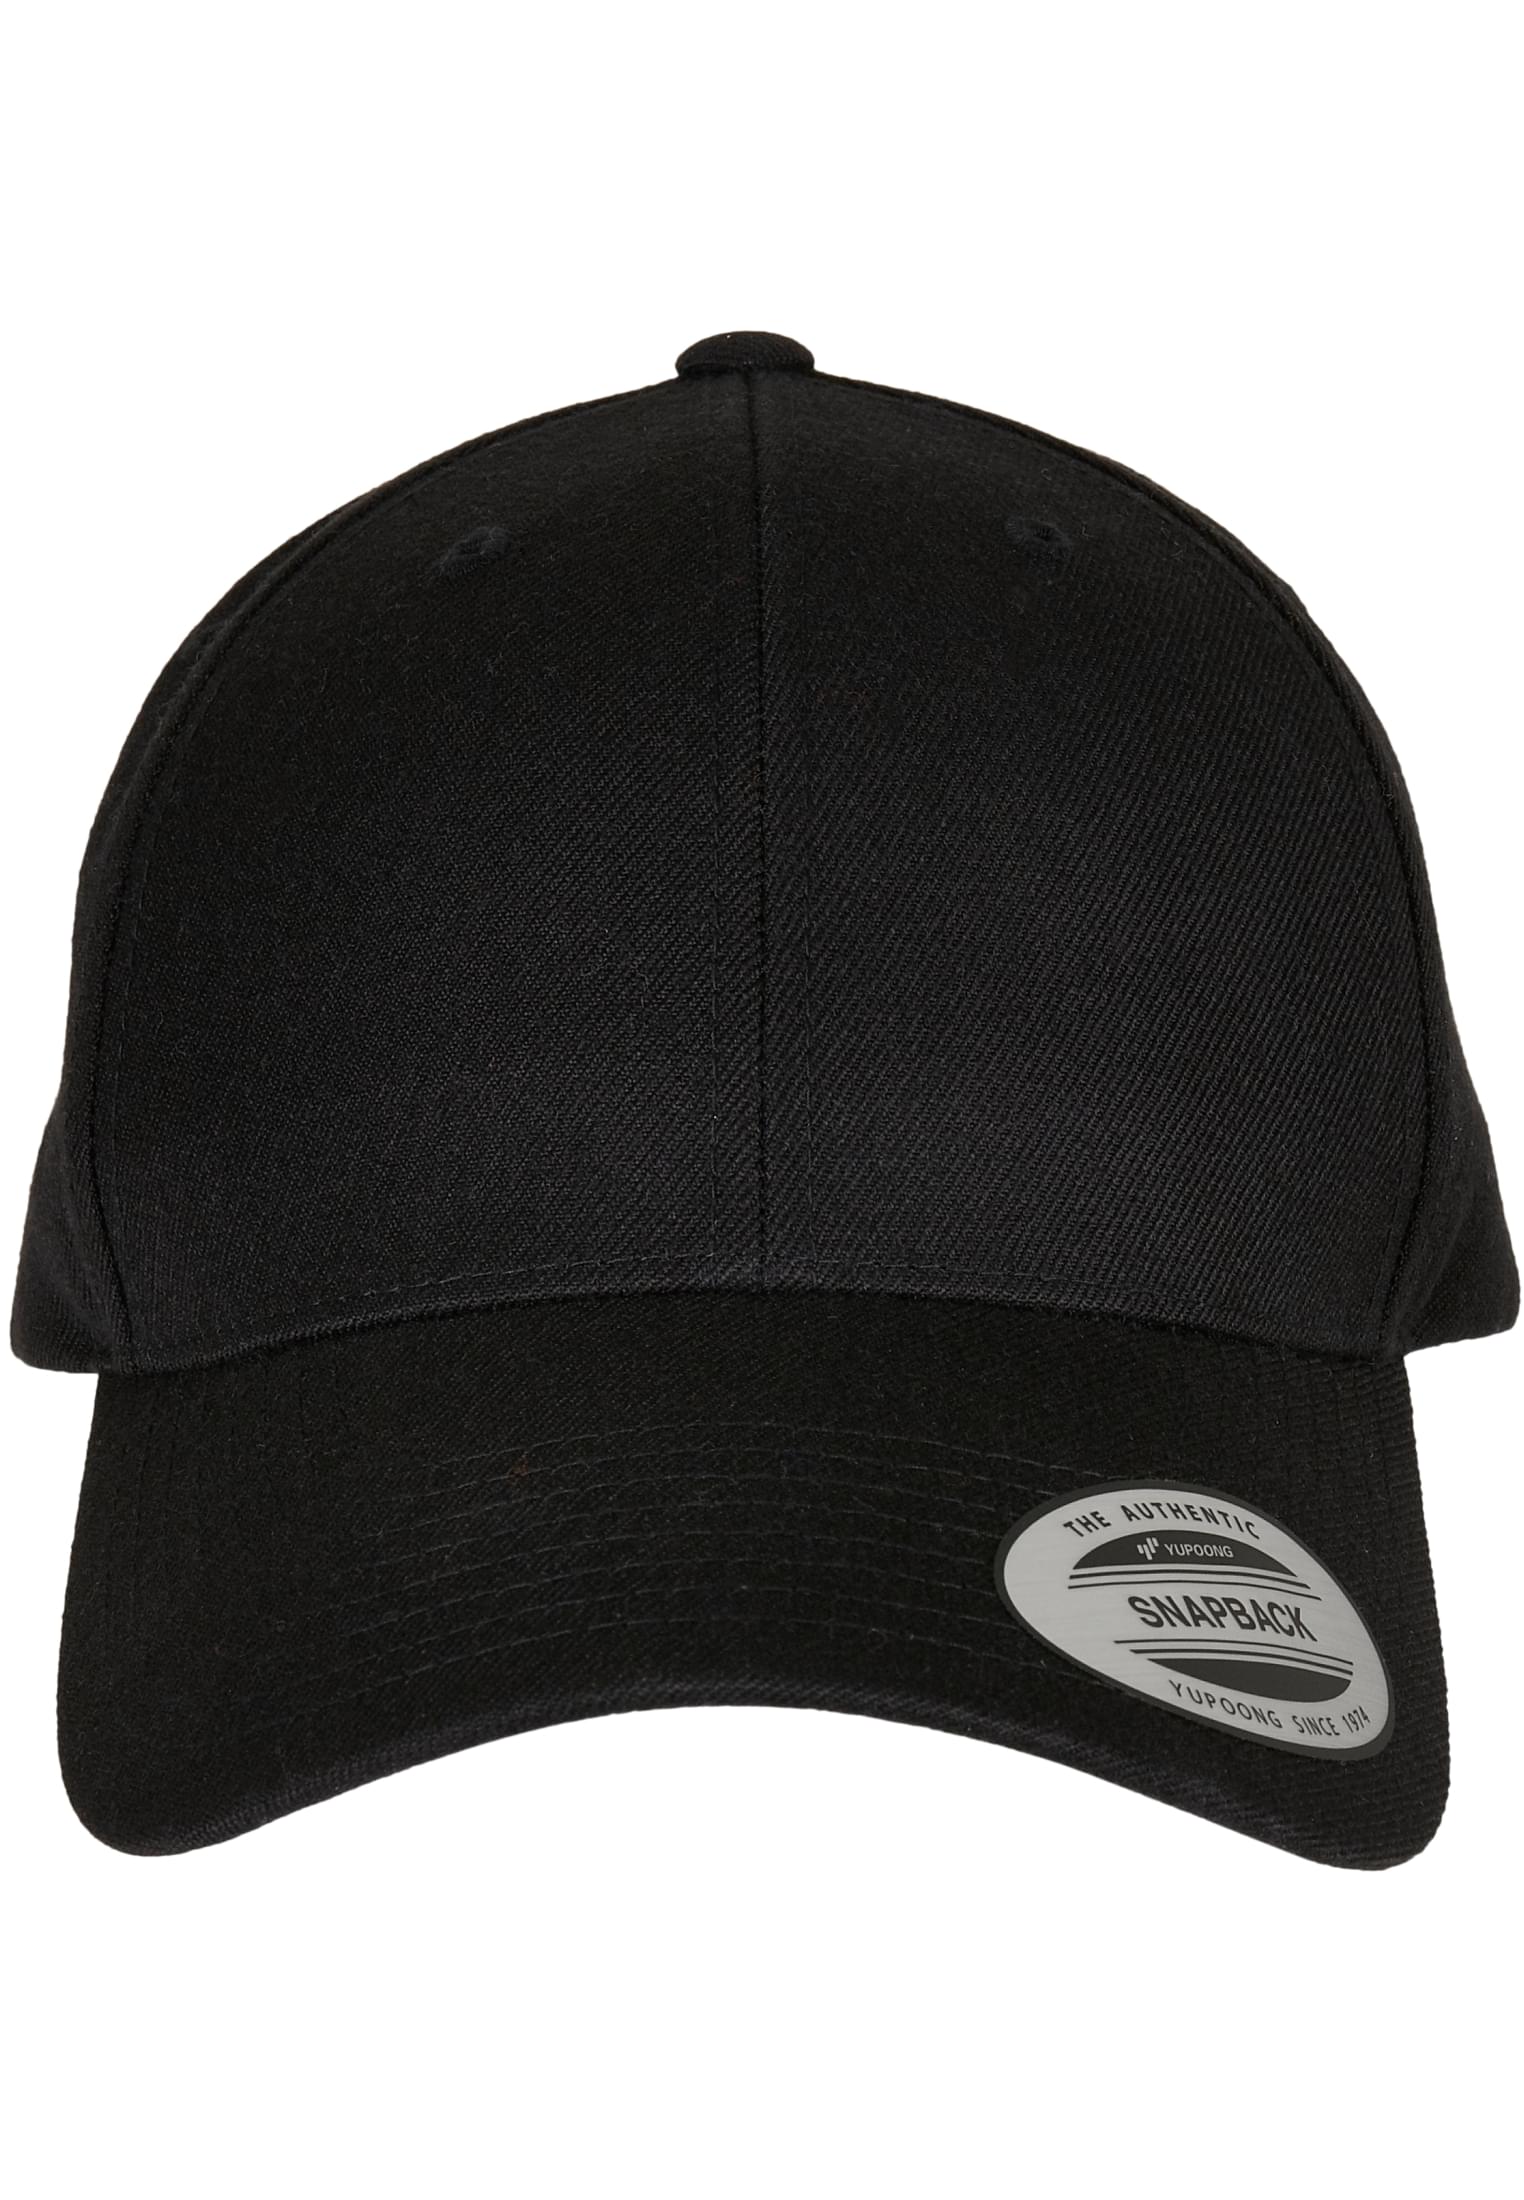 Snapback Premium Curved Visor Snapback Cap in Farbe black